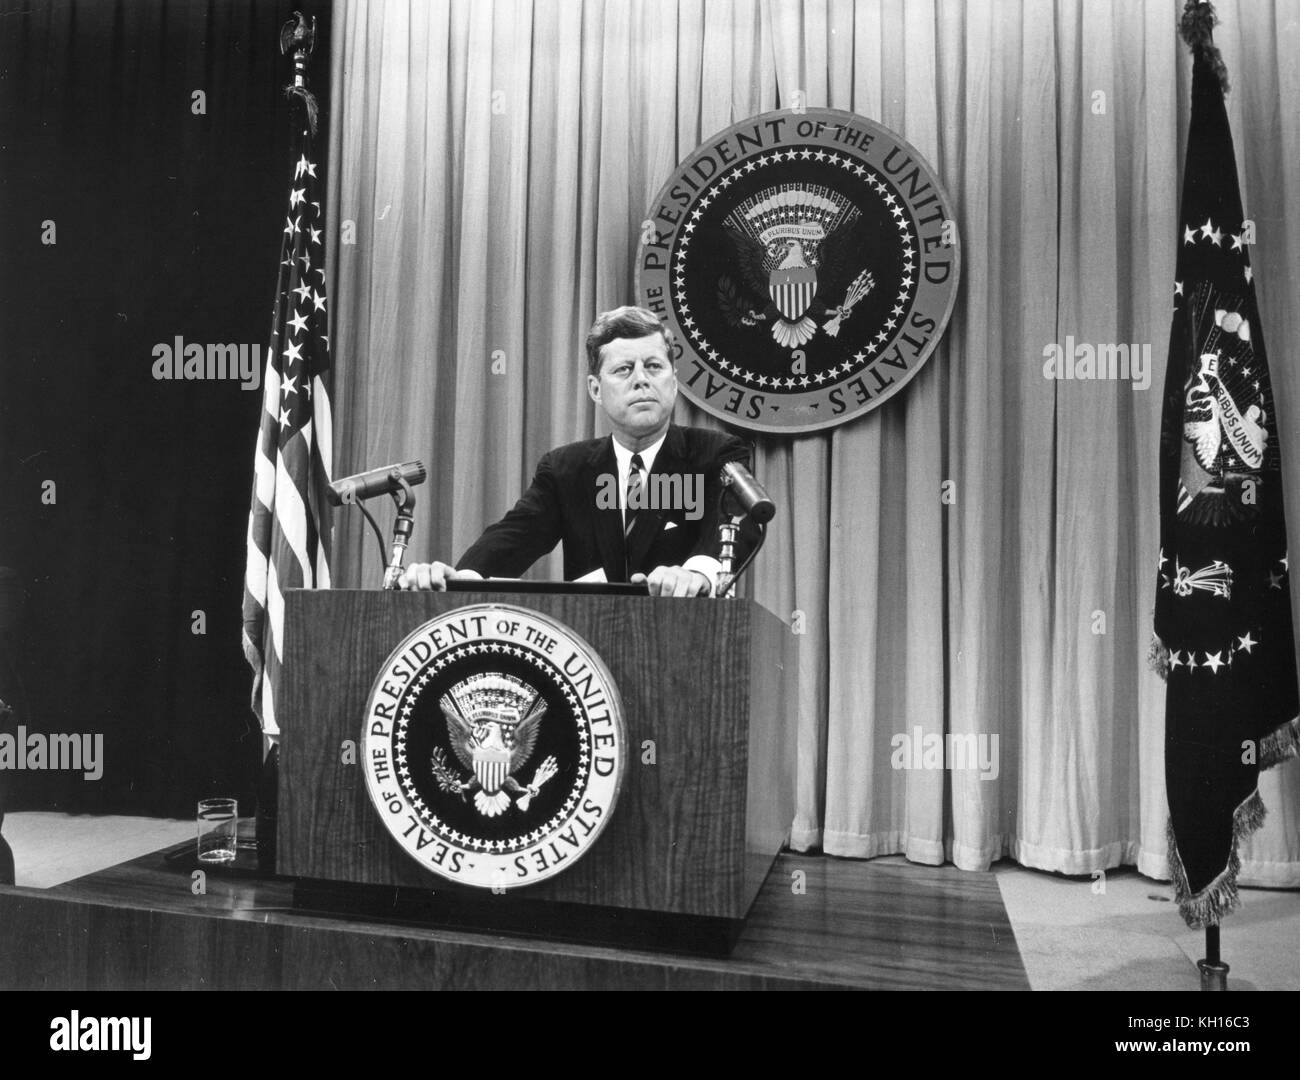 Foto del Presidente John F. Kennedy habló en la conferencia de prensa en la que habló de la talidomida crisis y problemas técnicos con el tratado de prohibición total de pruebas nucleares, Washington, DC, 8/01/1962. Foto por Abbie Rowe Foto de stock